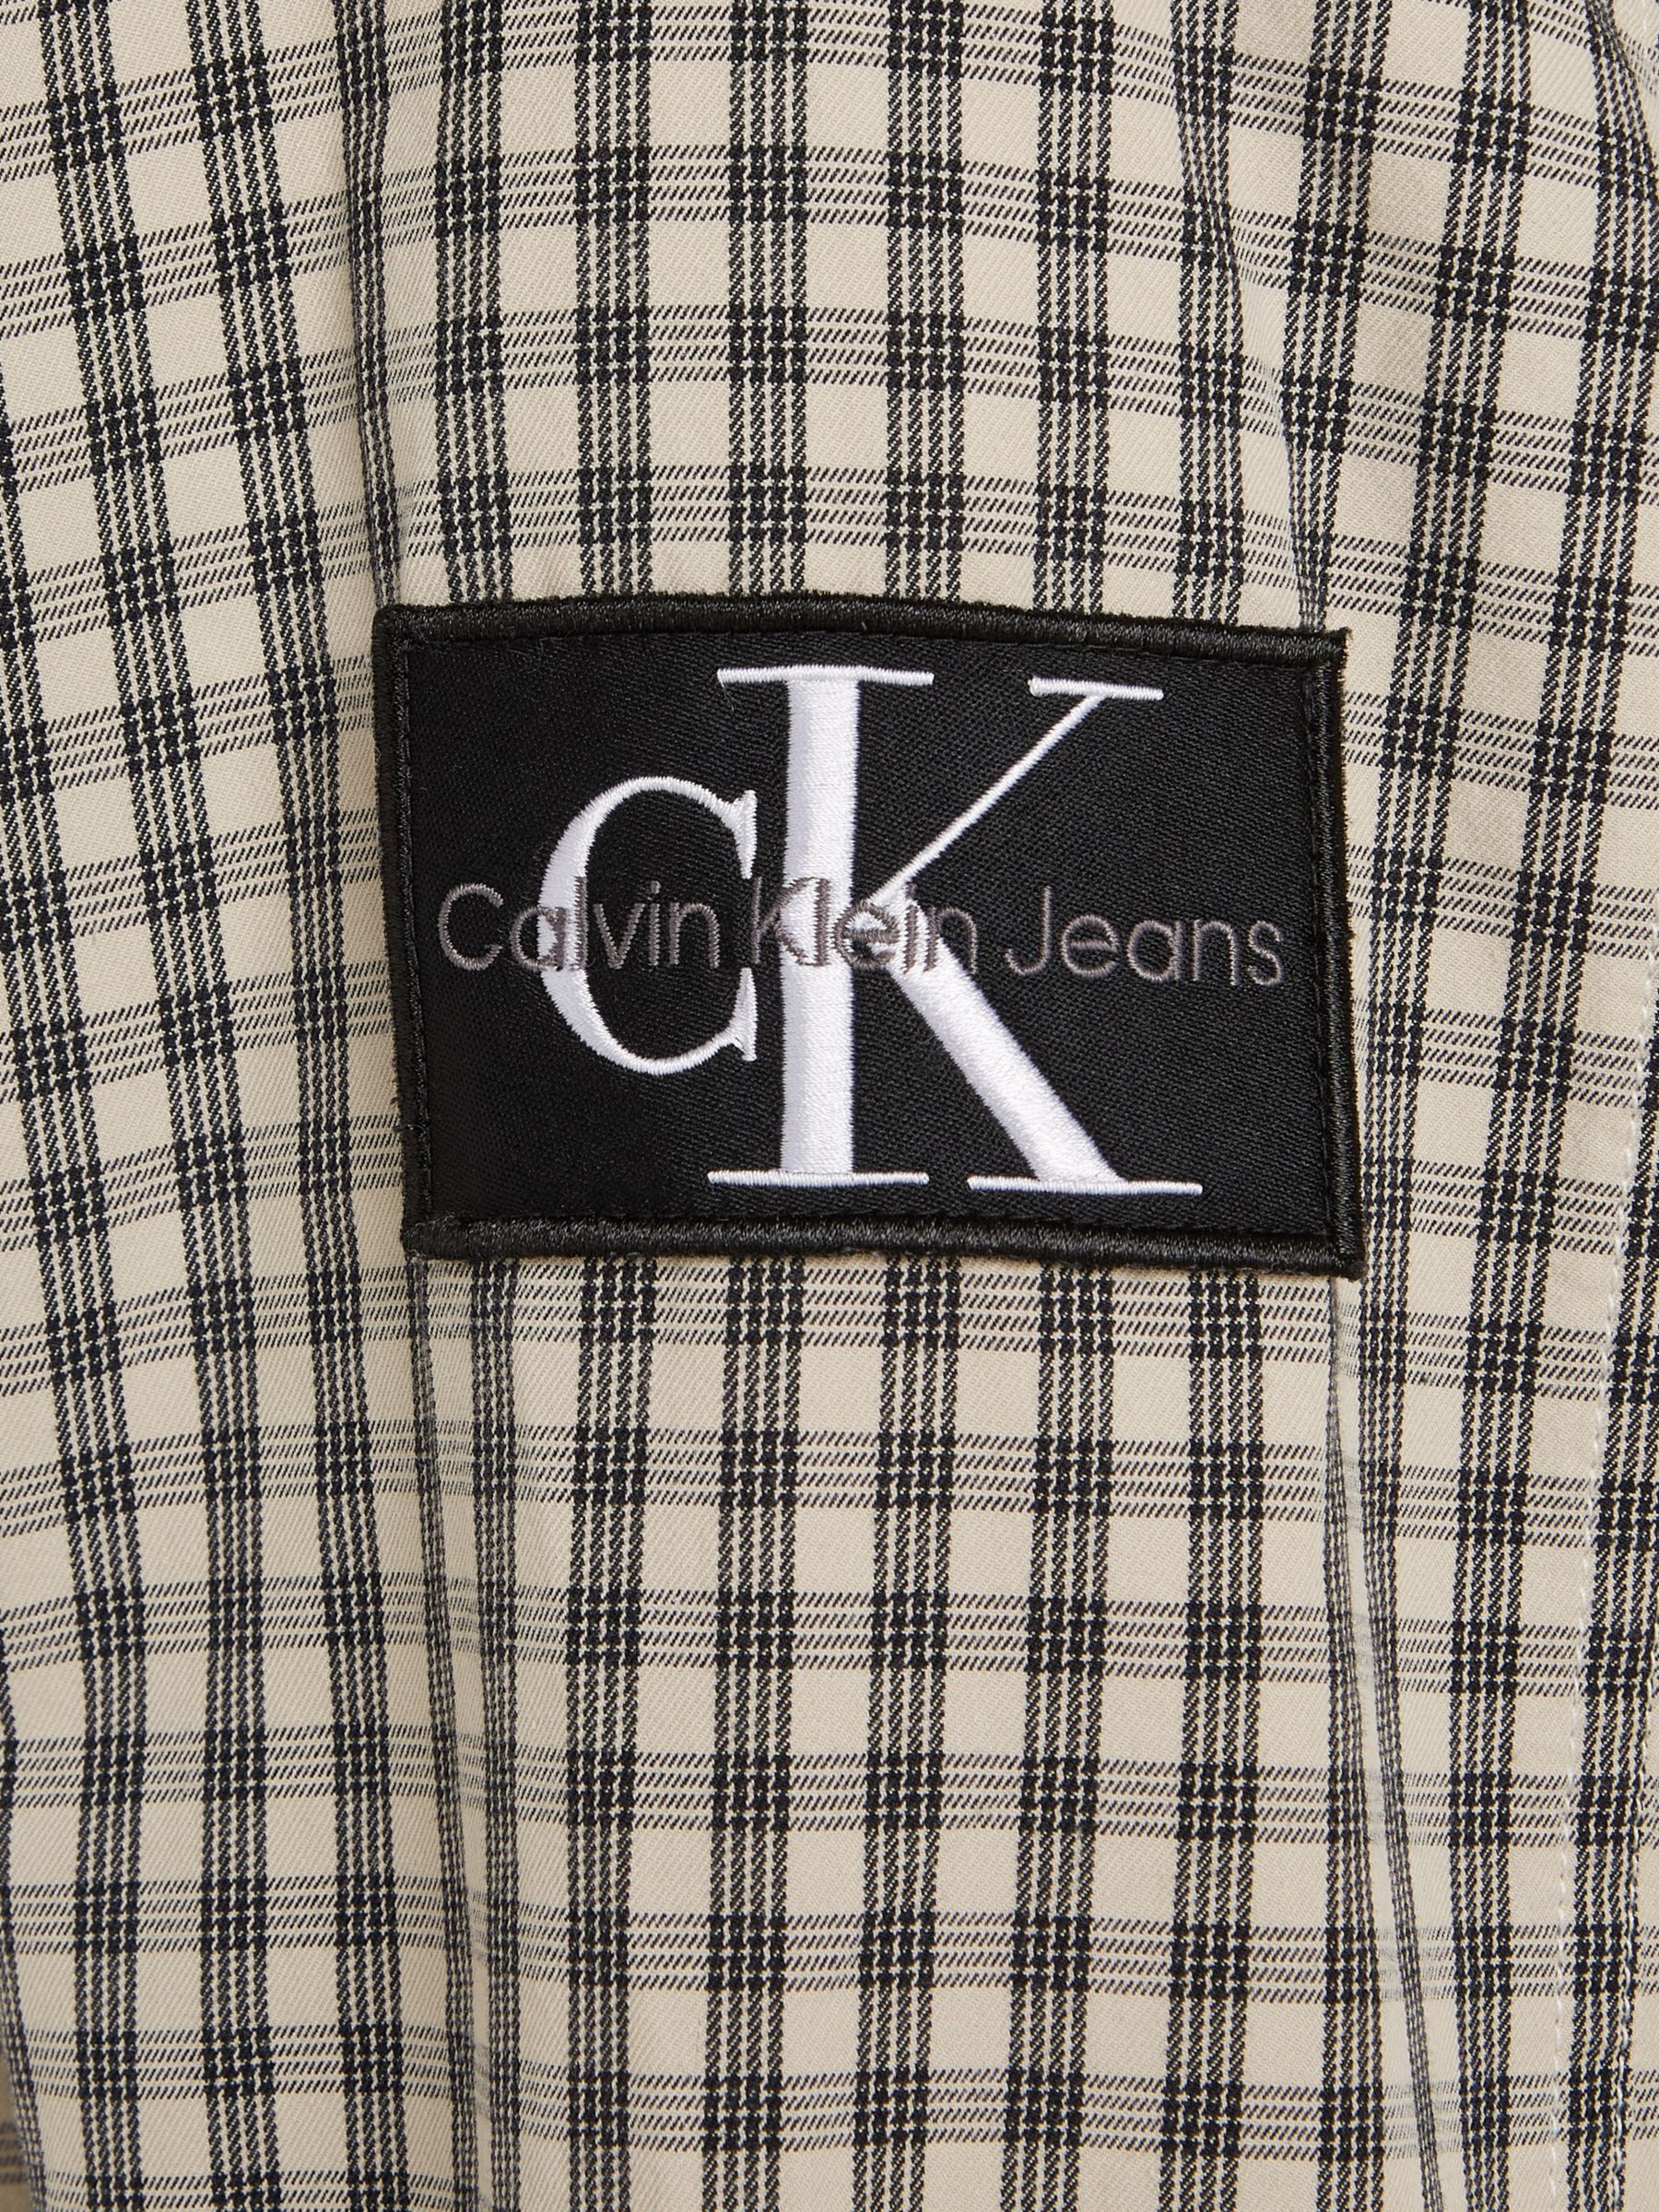 Calvin Klein Jeans Check Shirt, Pale Yellow/Black, XS